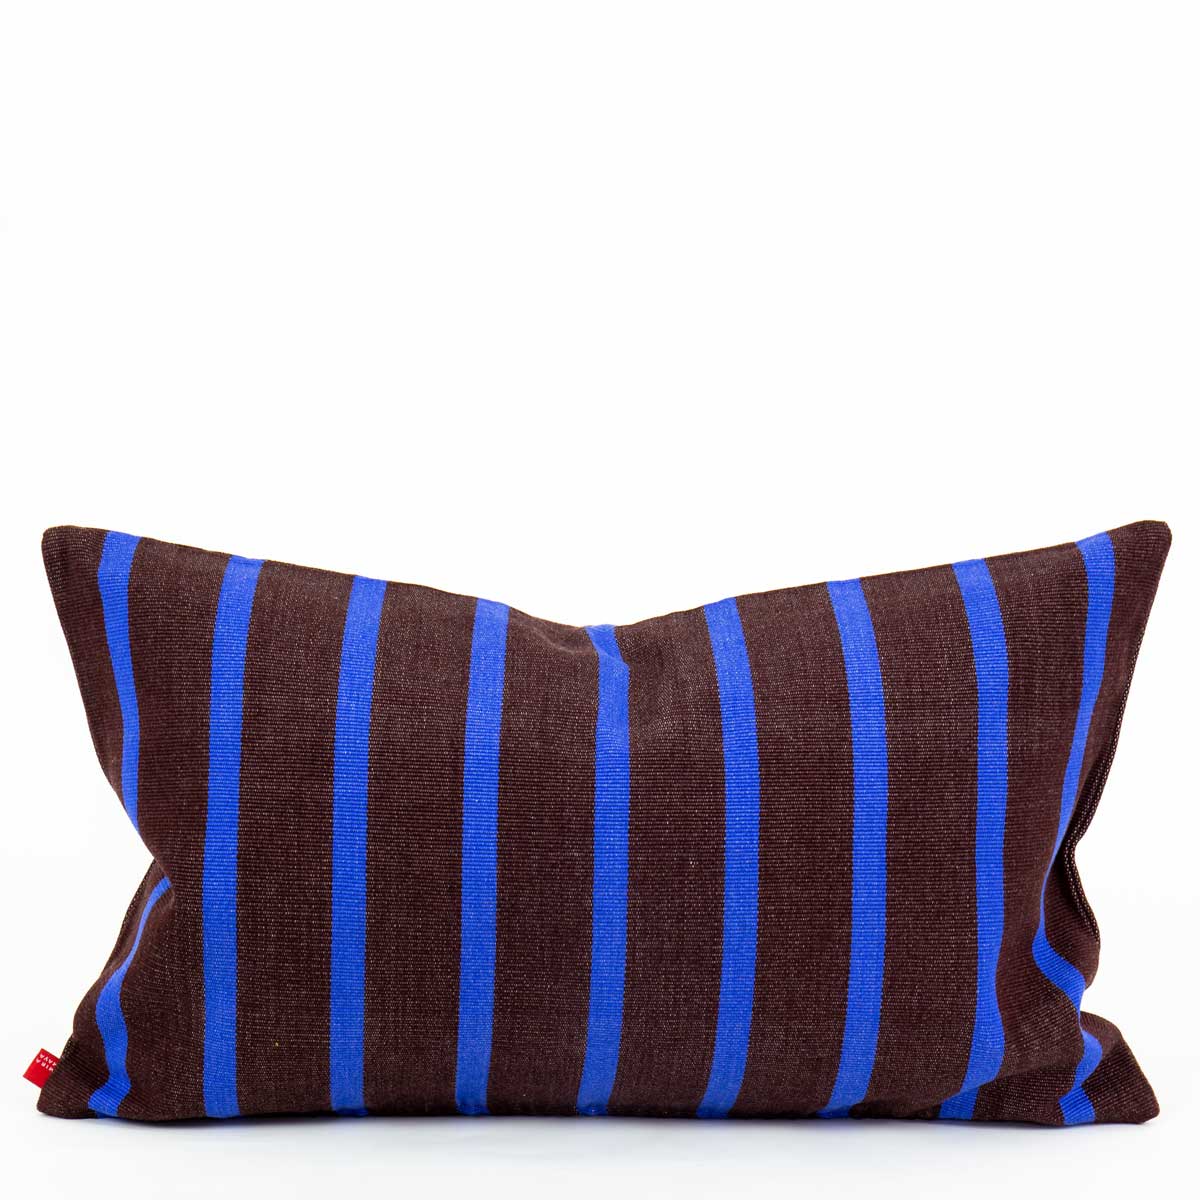 AMERICA Cushion cover 30x50, brown/blue